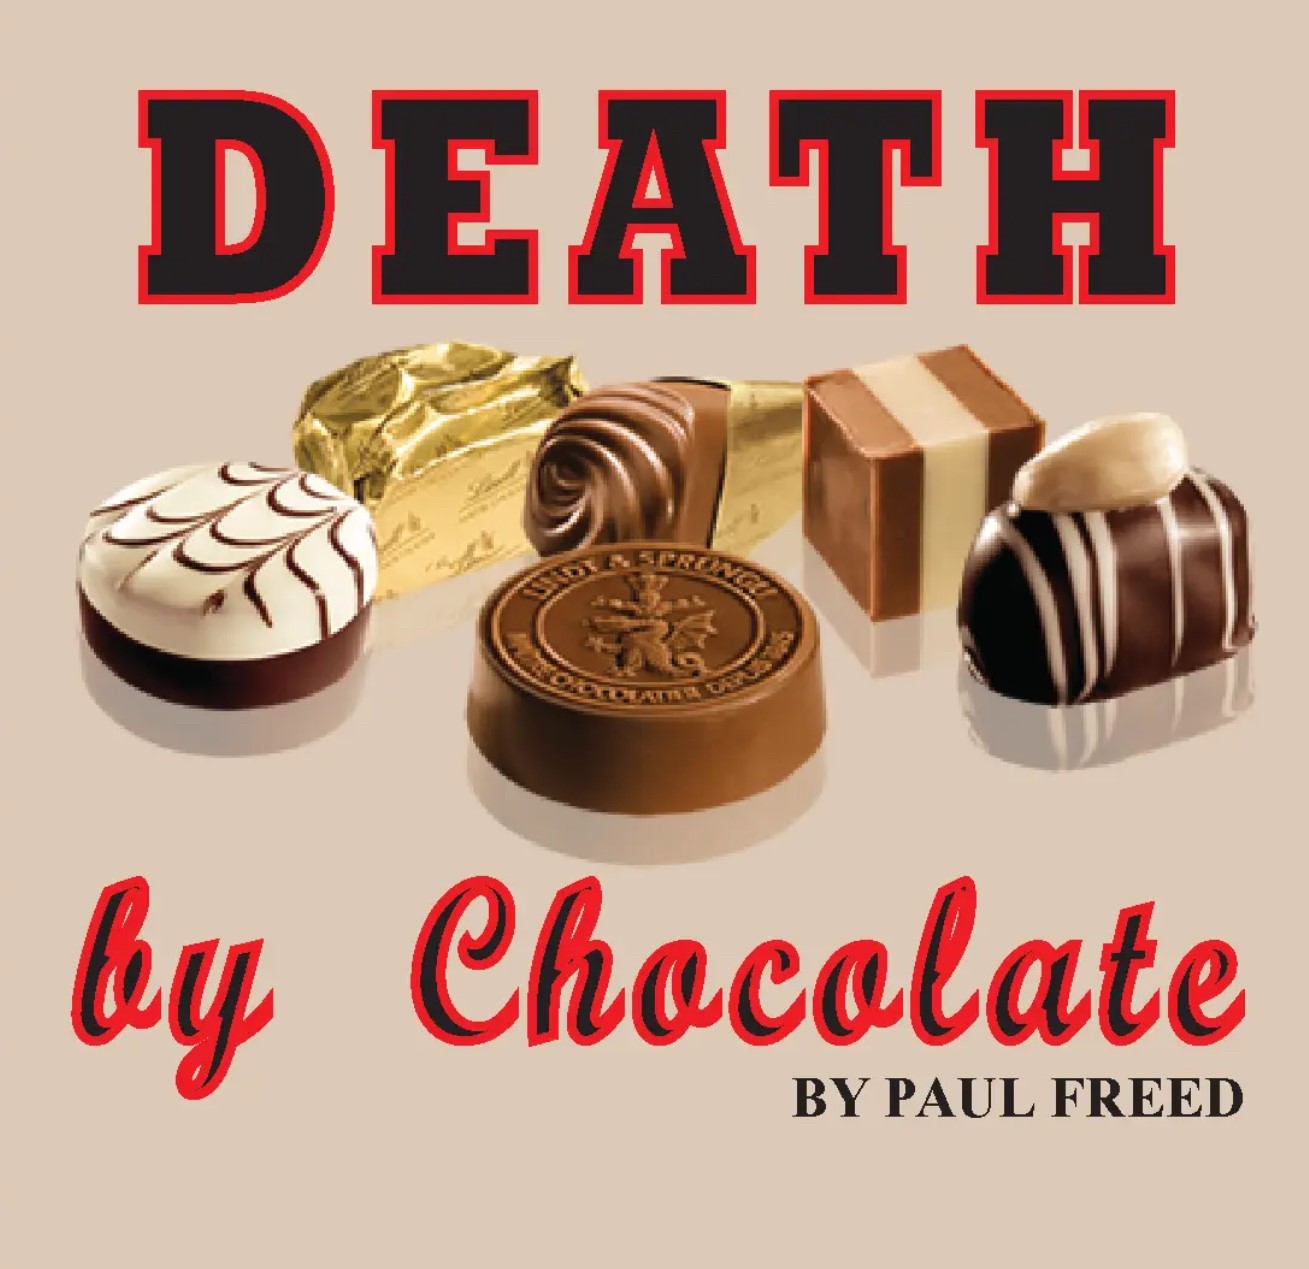 Death by Chocolate by Paul Freed on may. 11, 19:00@Area Community Theatre - Elegir asientoCompra entradas y obtén información entomahact.com 